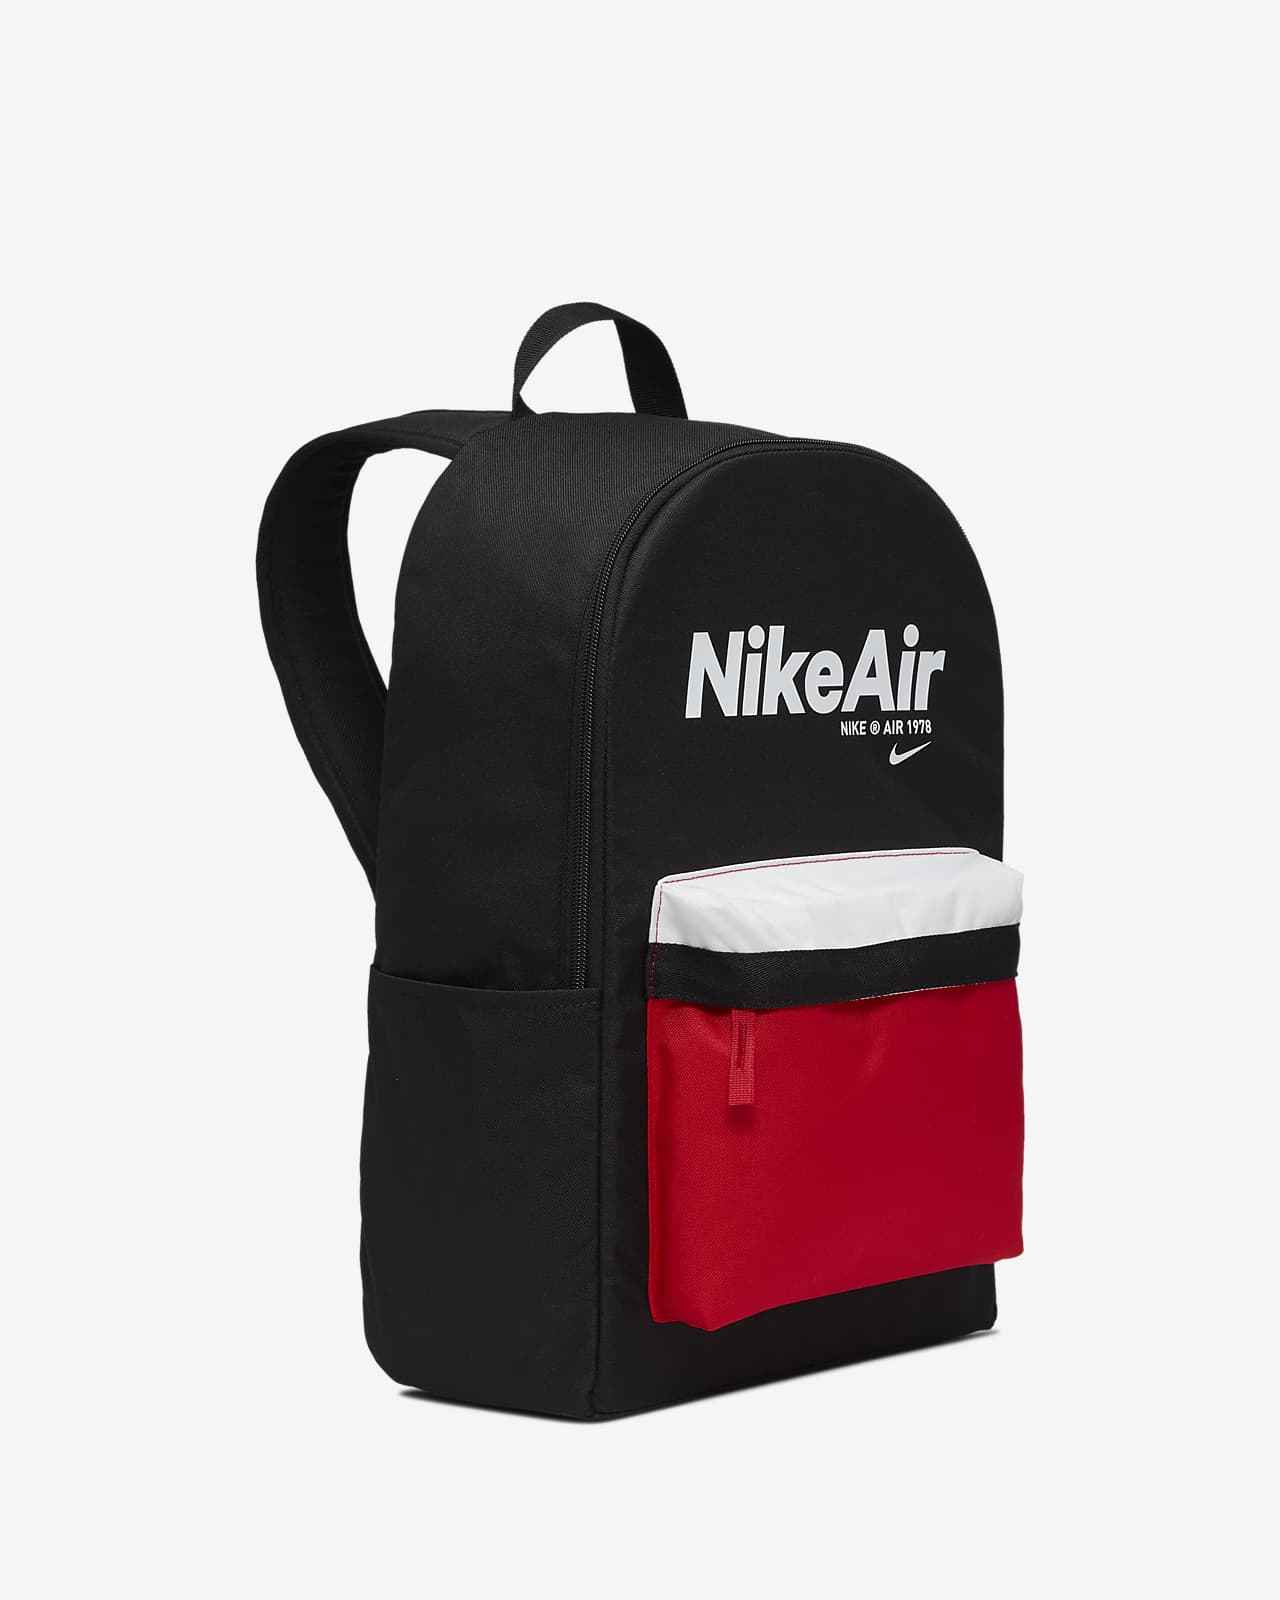 nike air max 2. backpack